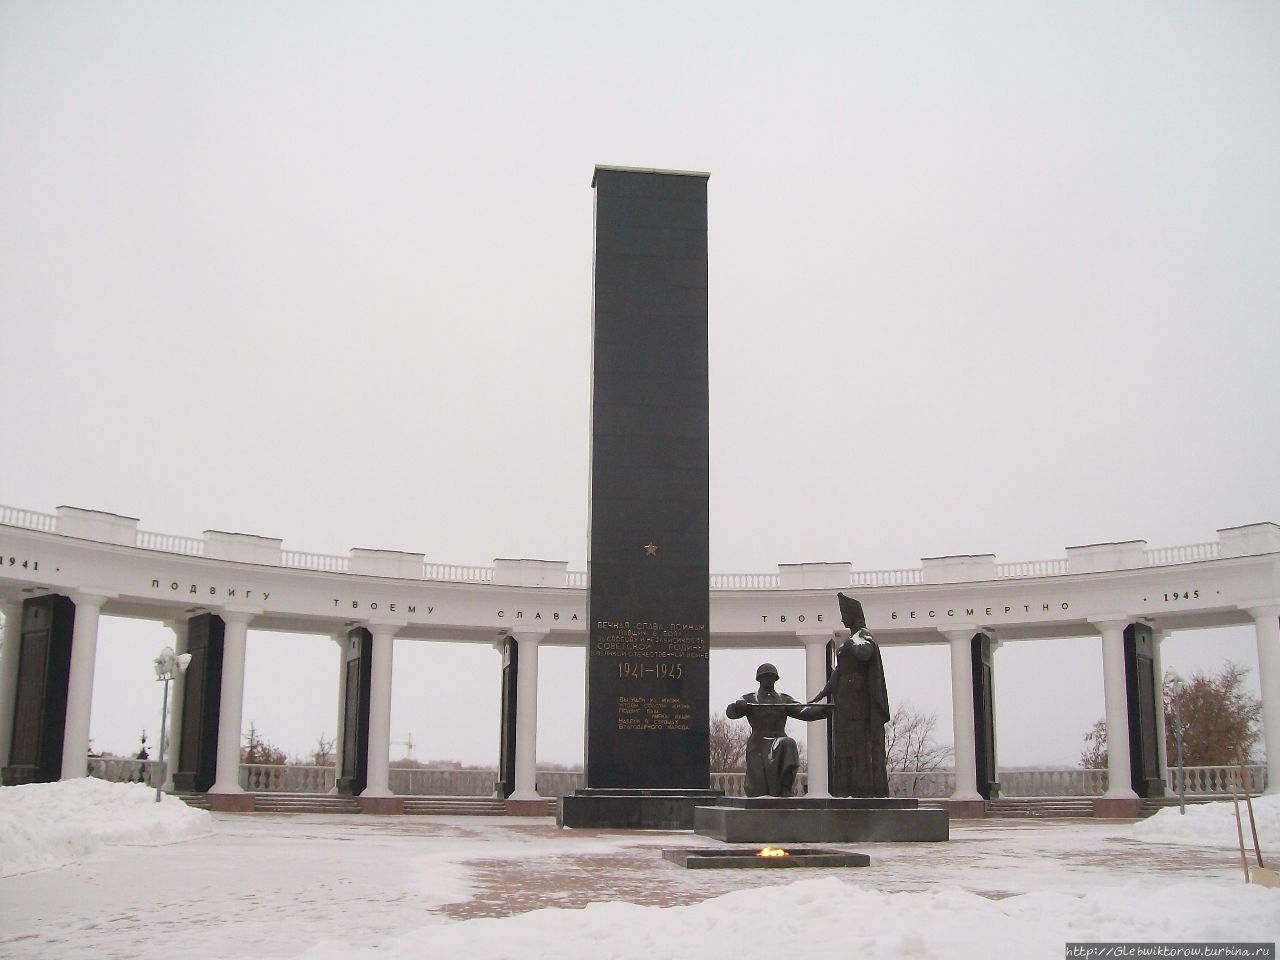 Поездка в Саранск в начале декабря